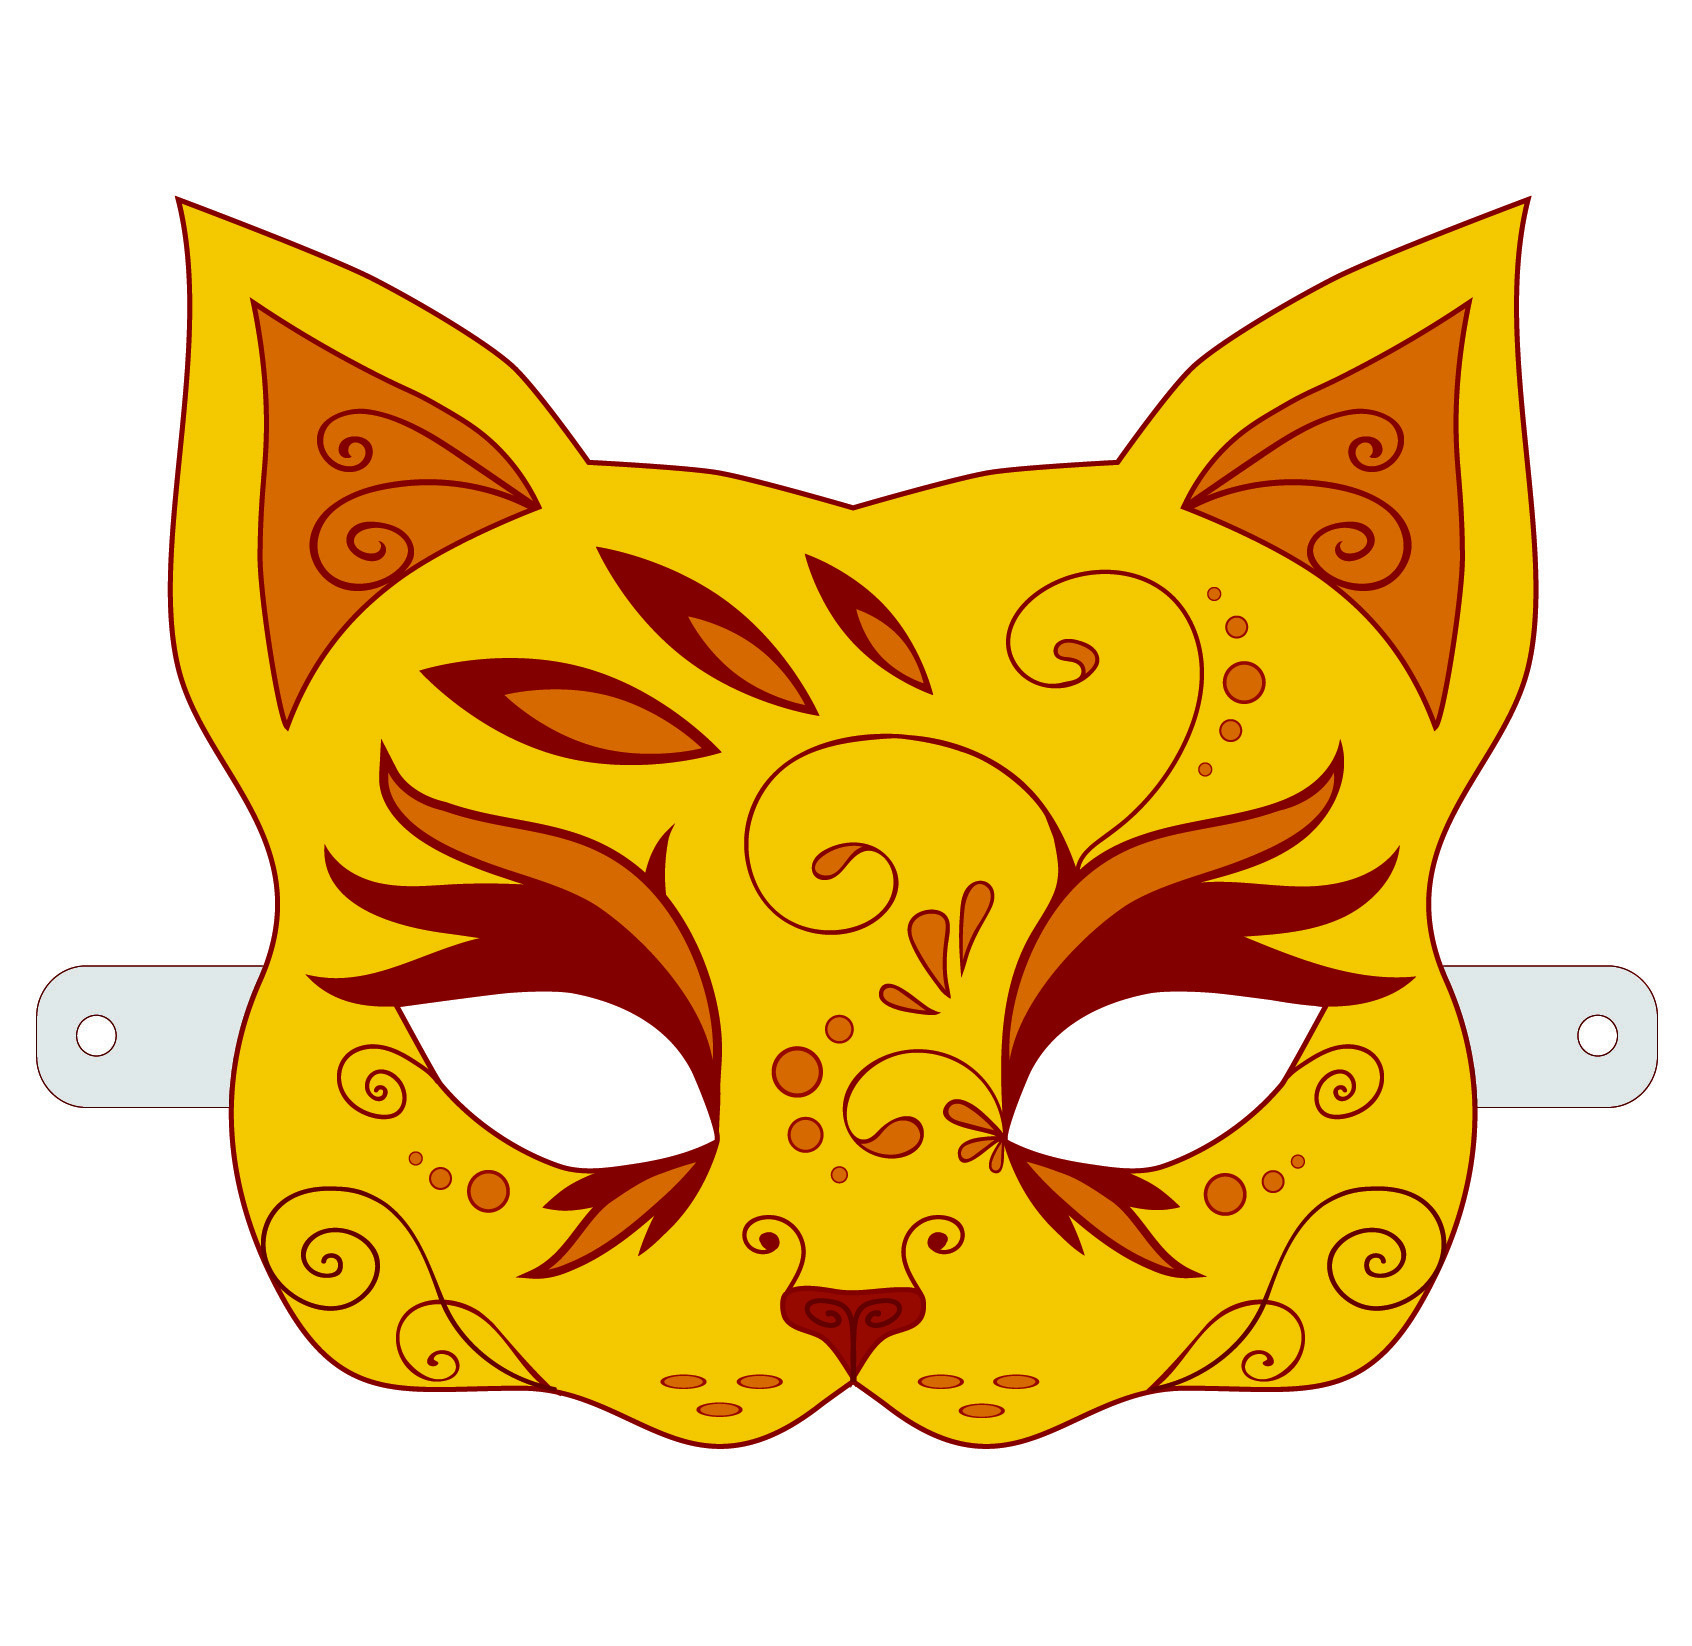 Ilustração. Uma máscara com o formato de um gato em amarelo, decorada com traços e formas em laranja, visto do focinho para cima. As orelhas são pontudas, de tamanho médio e com estampas em marrom